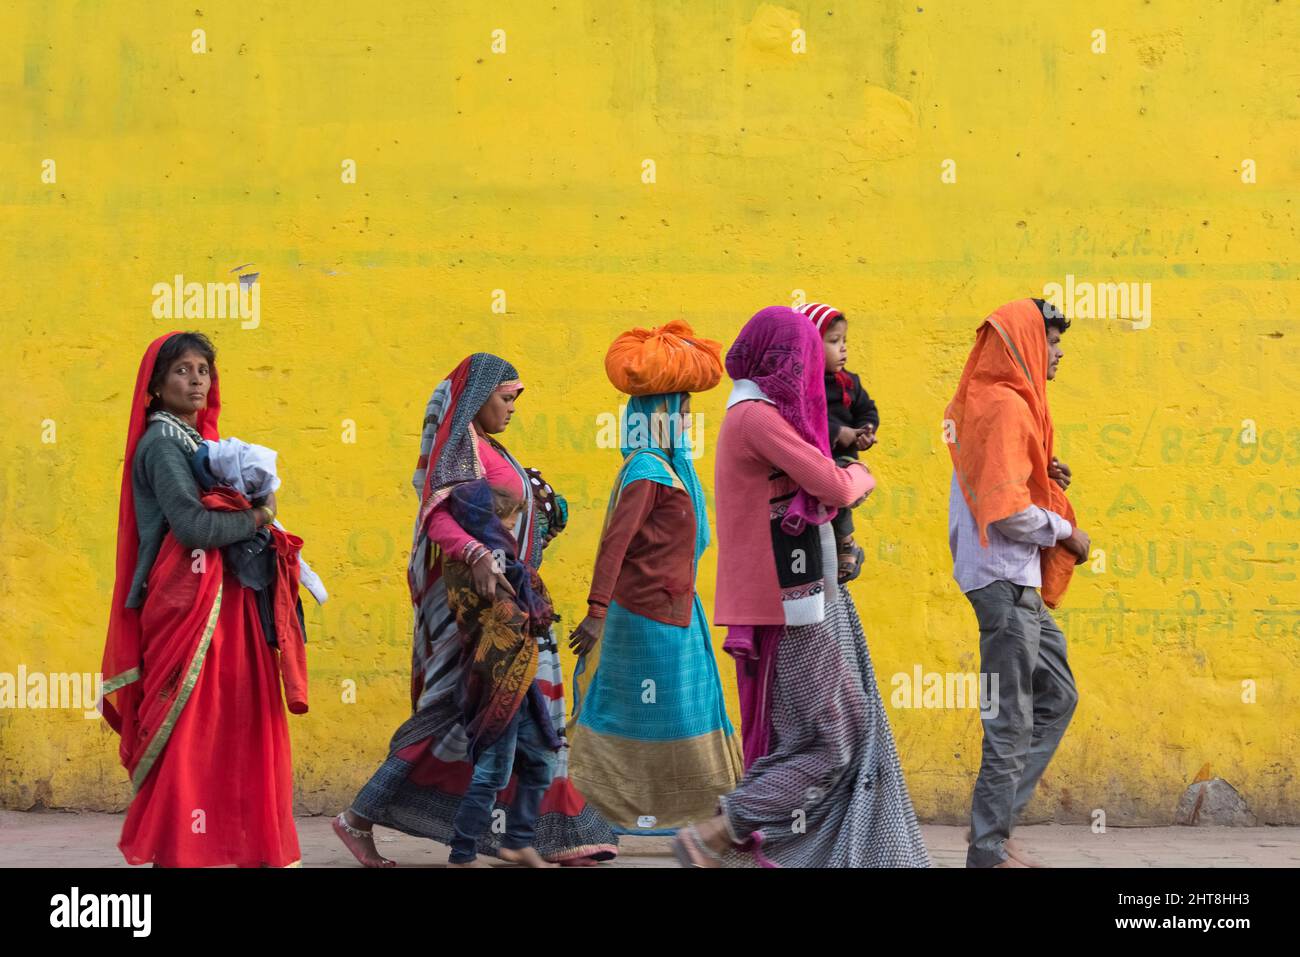 People walking on the street, Mathura, Uttar Pradesh, India Stock Photo